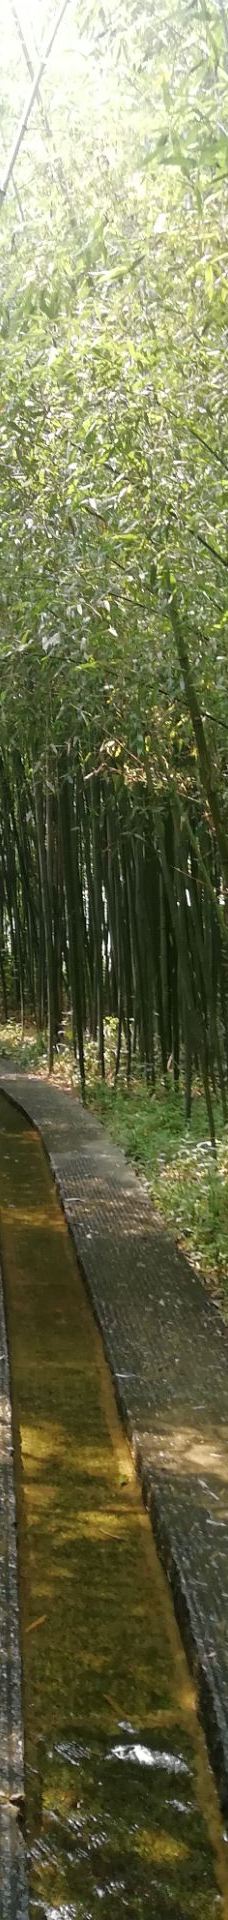 竹洞天风景区-日照